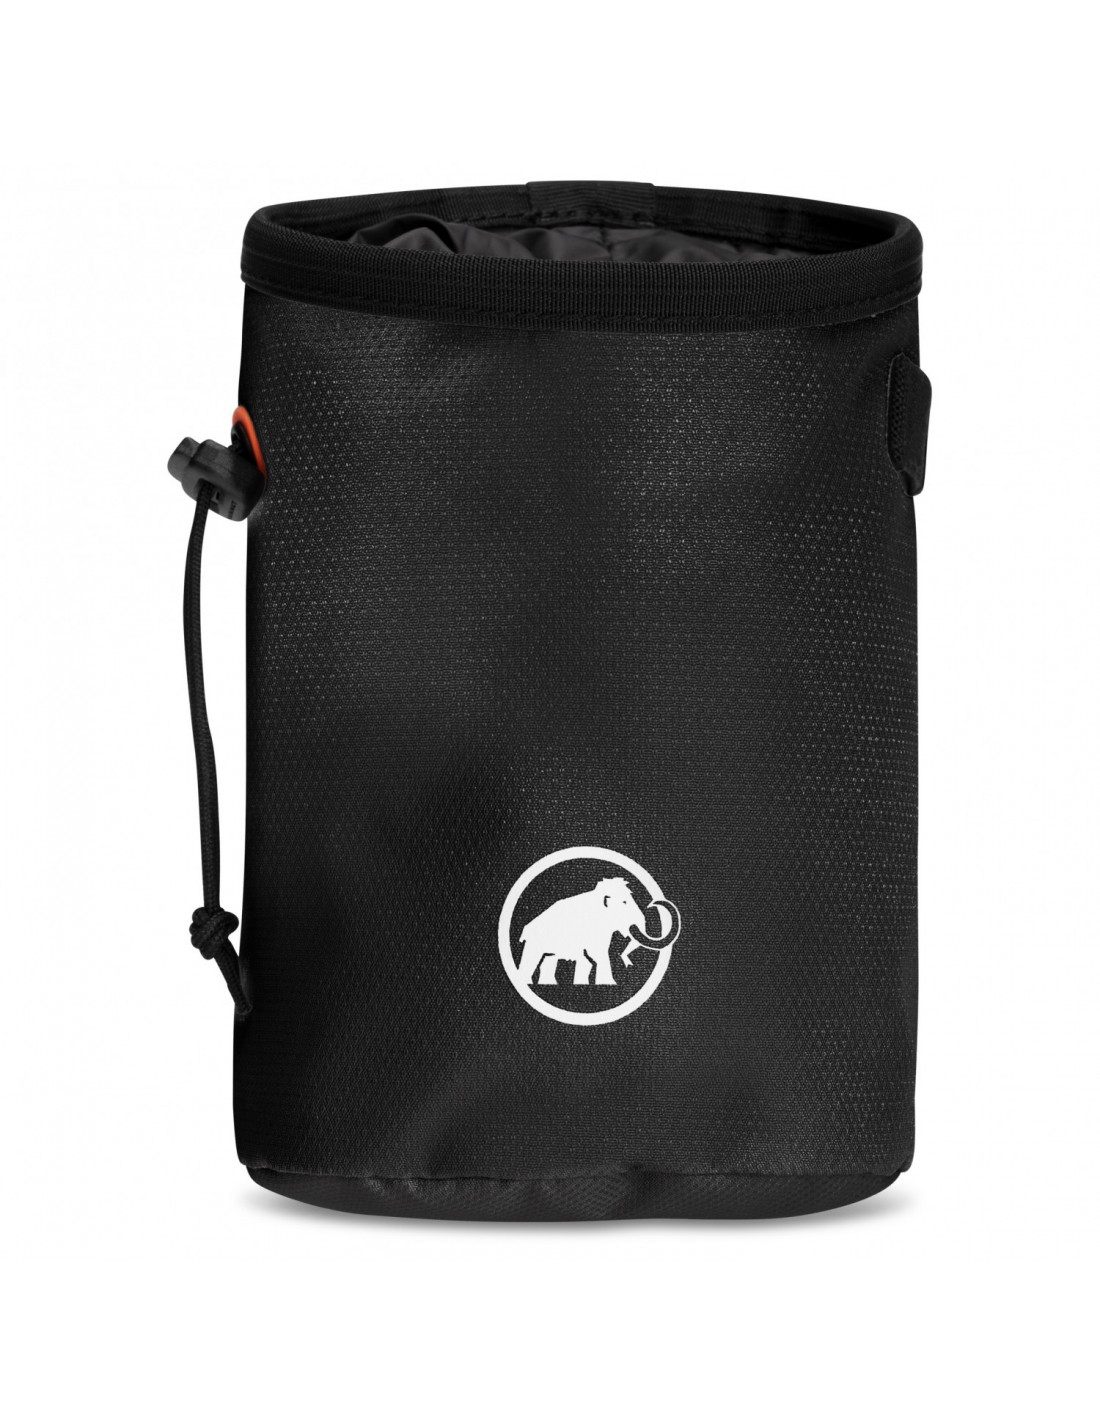 Mammut Gym Basic Chalk Bag, black Chalkbag Verwendung - Klettern, von Mammut